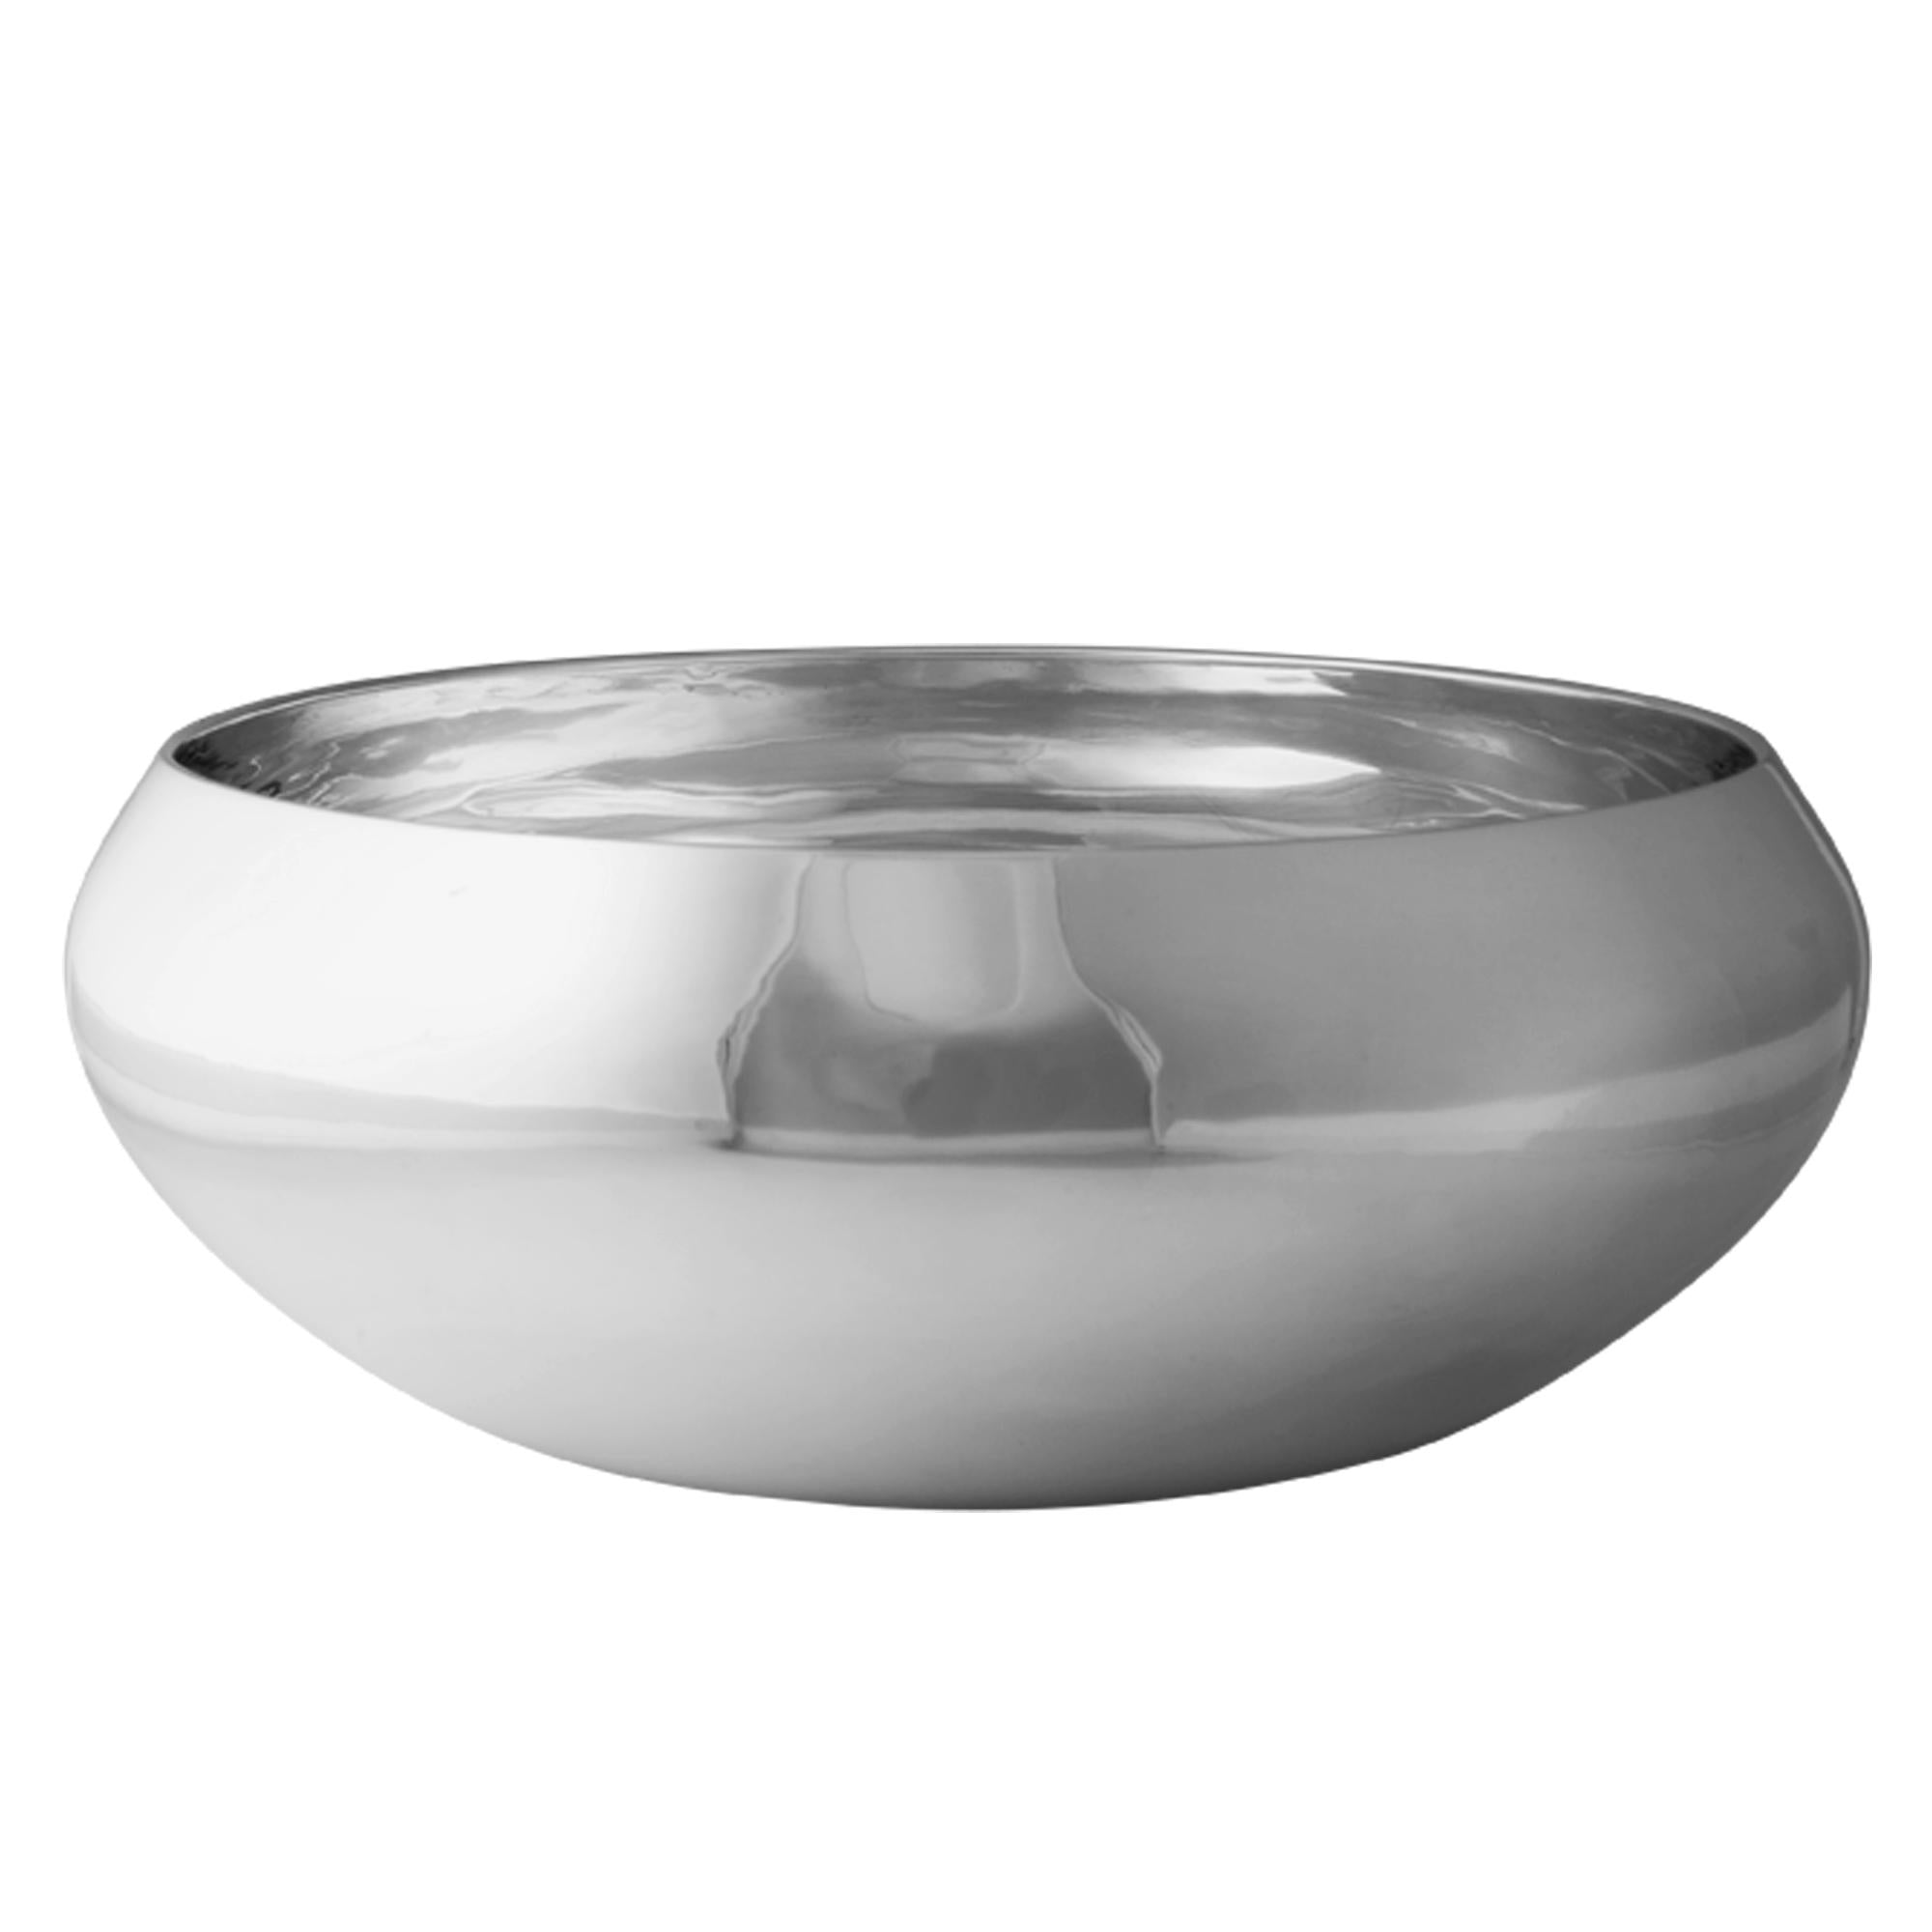 Kay Bojesen Nest Bowl Made Of Polished Steel, Large